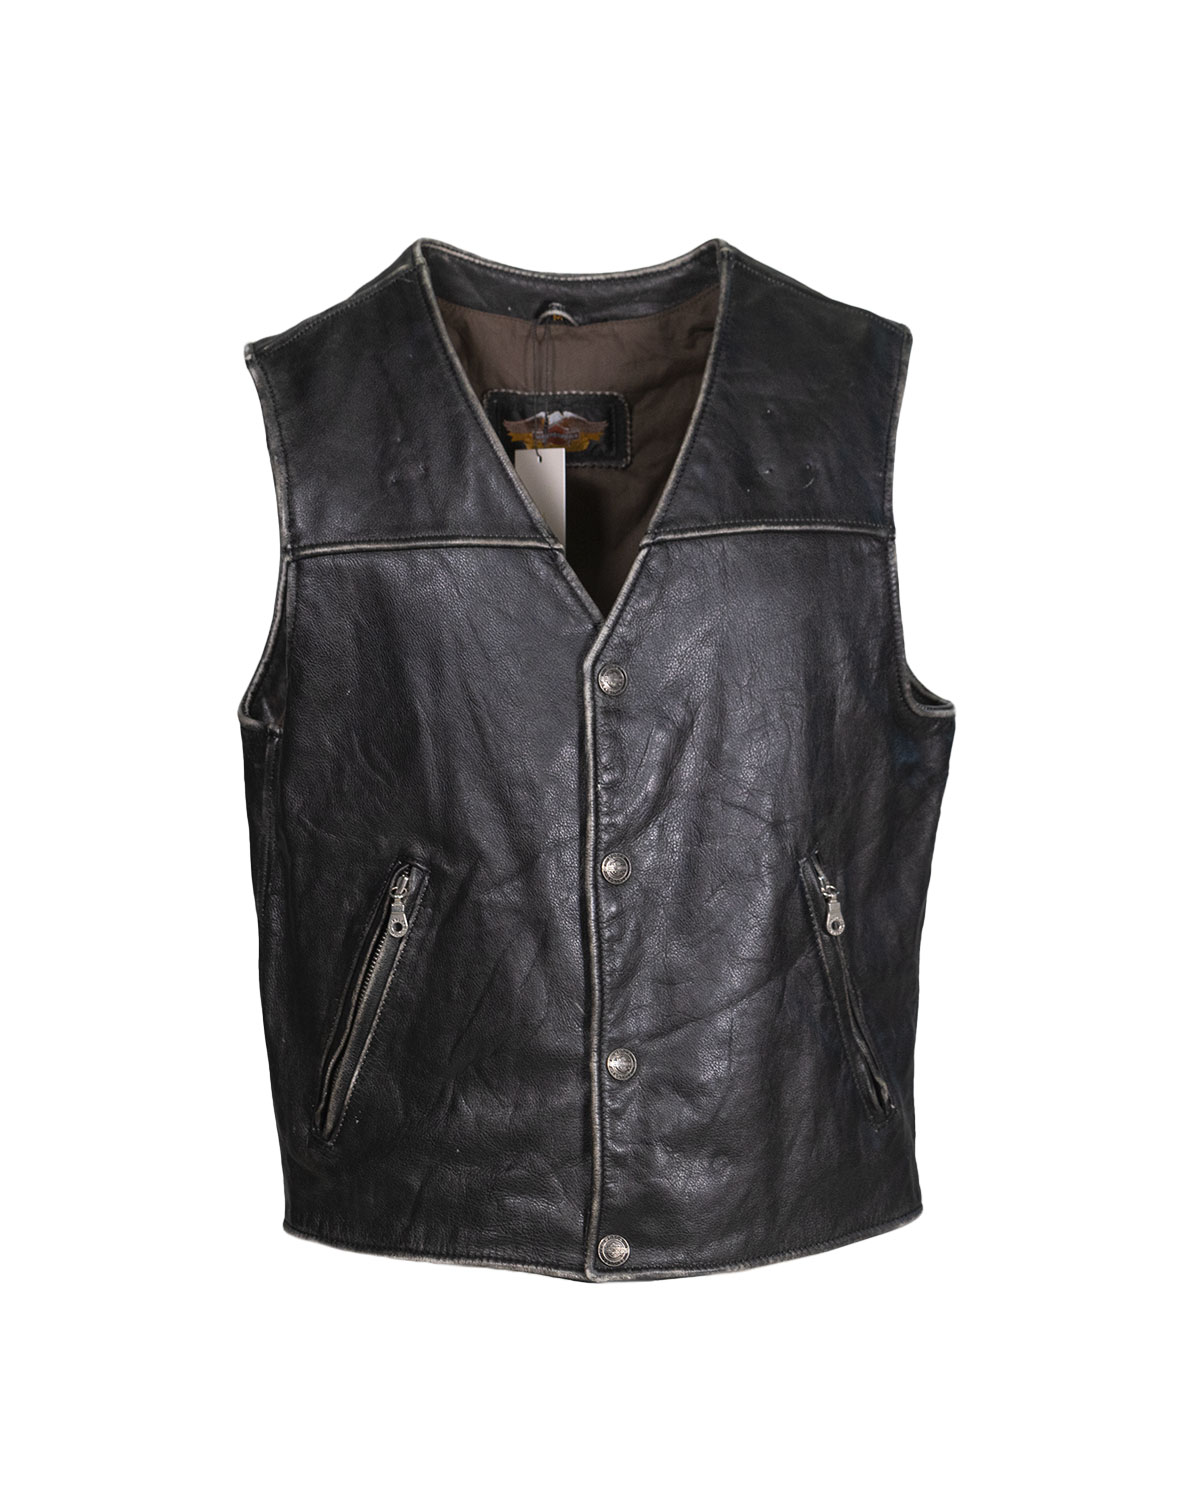 Harley Davidson - Leather sleeveless